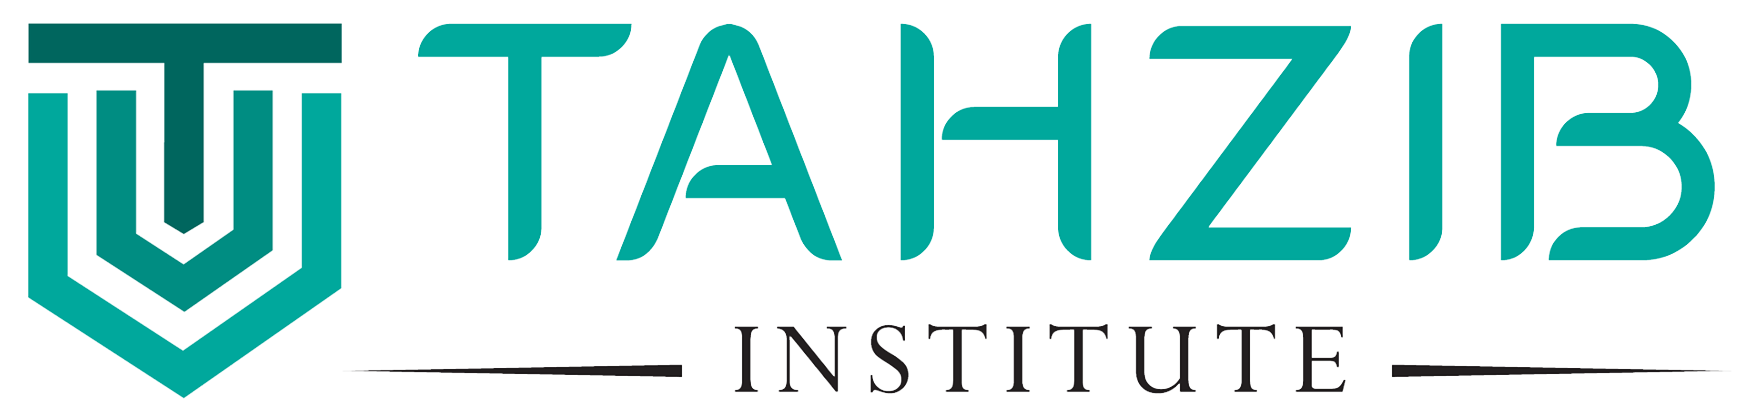 tahzib institute logo